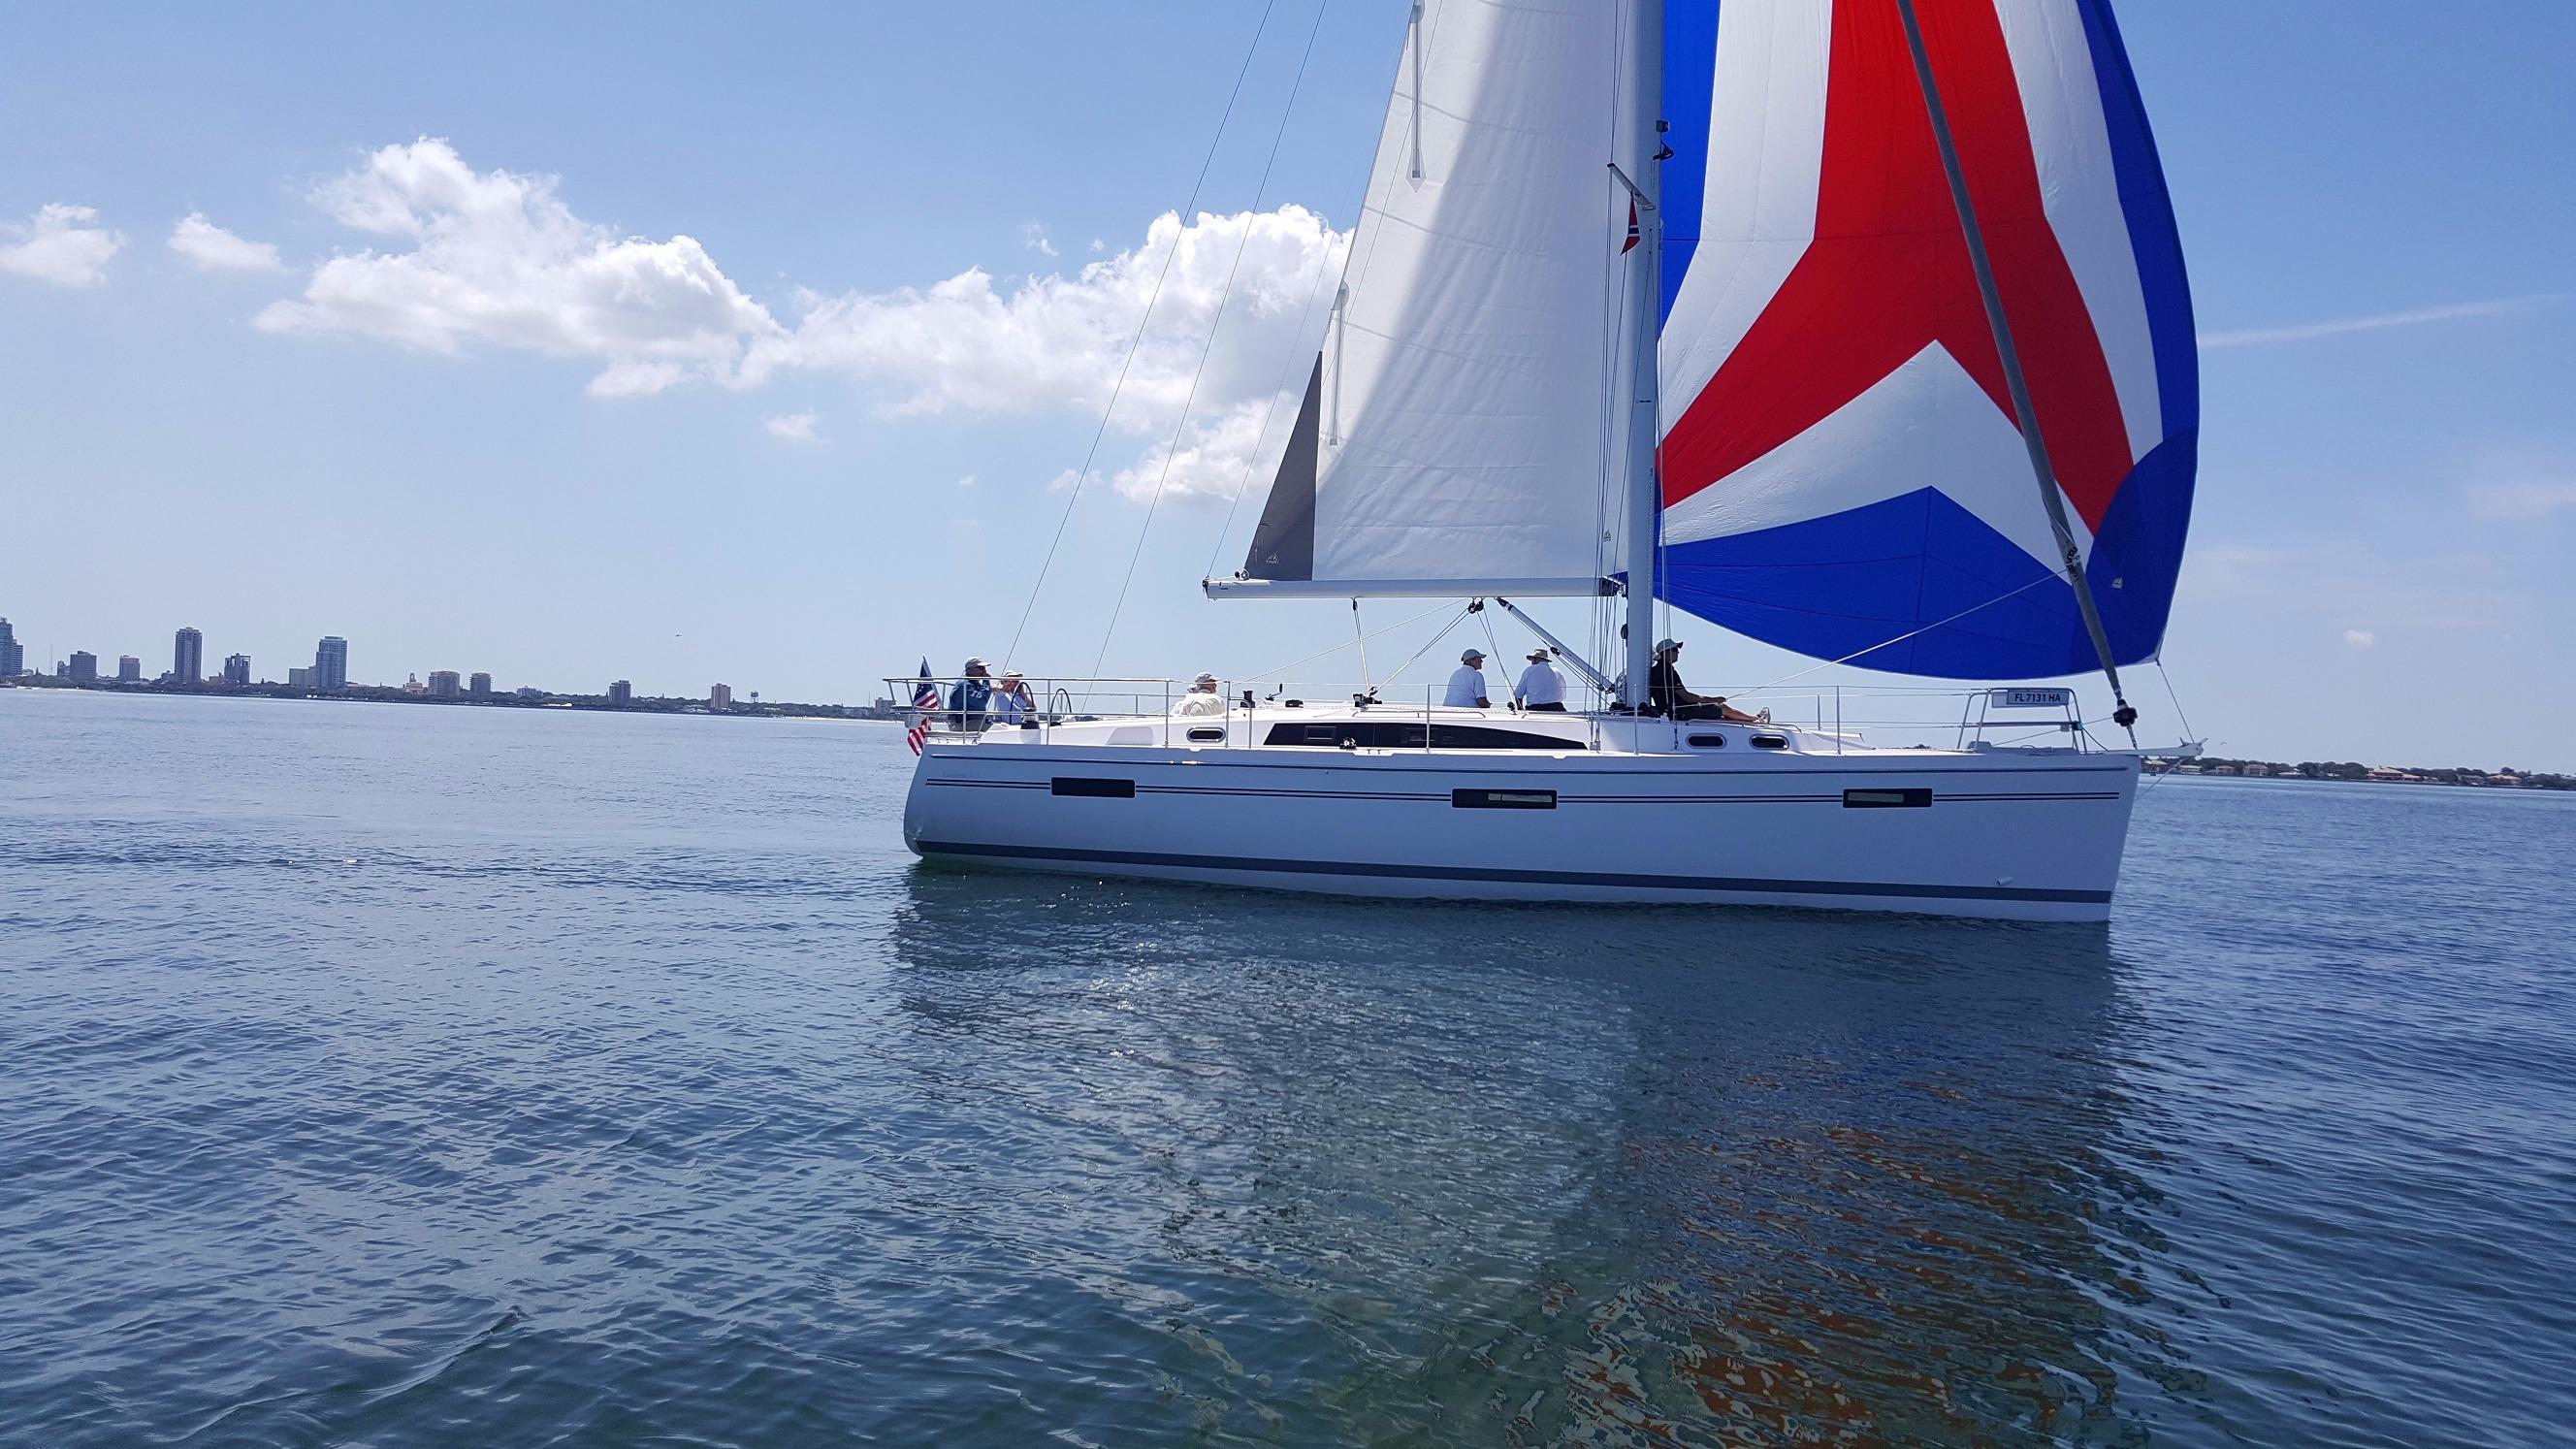 catalina 43 sailboat